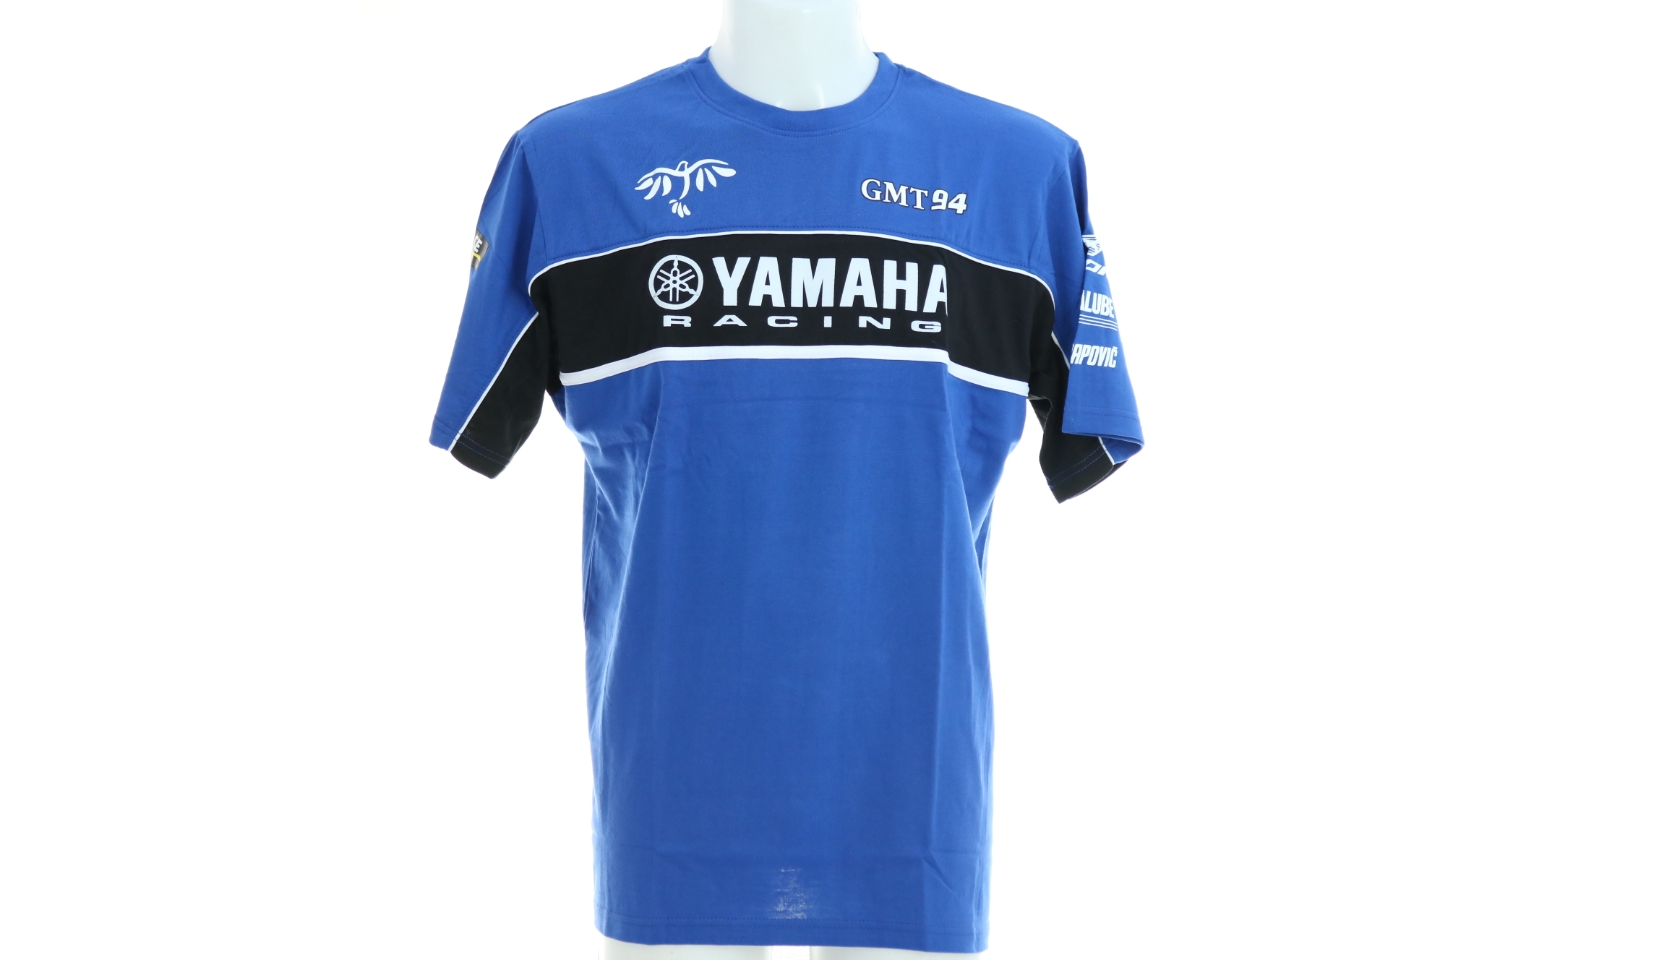 2021 GMT94 Yamaha T-Shirt